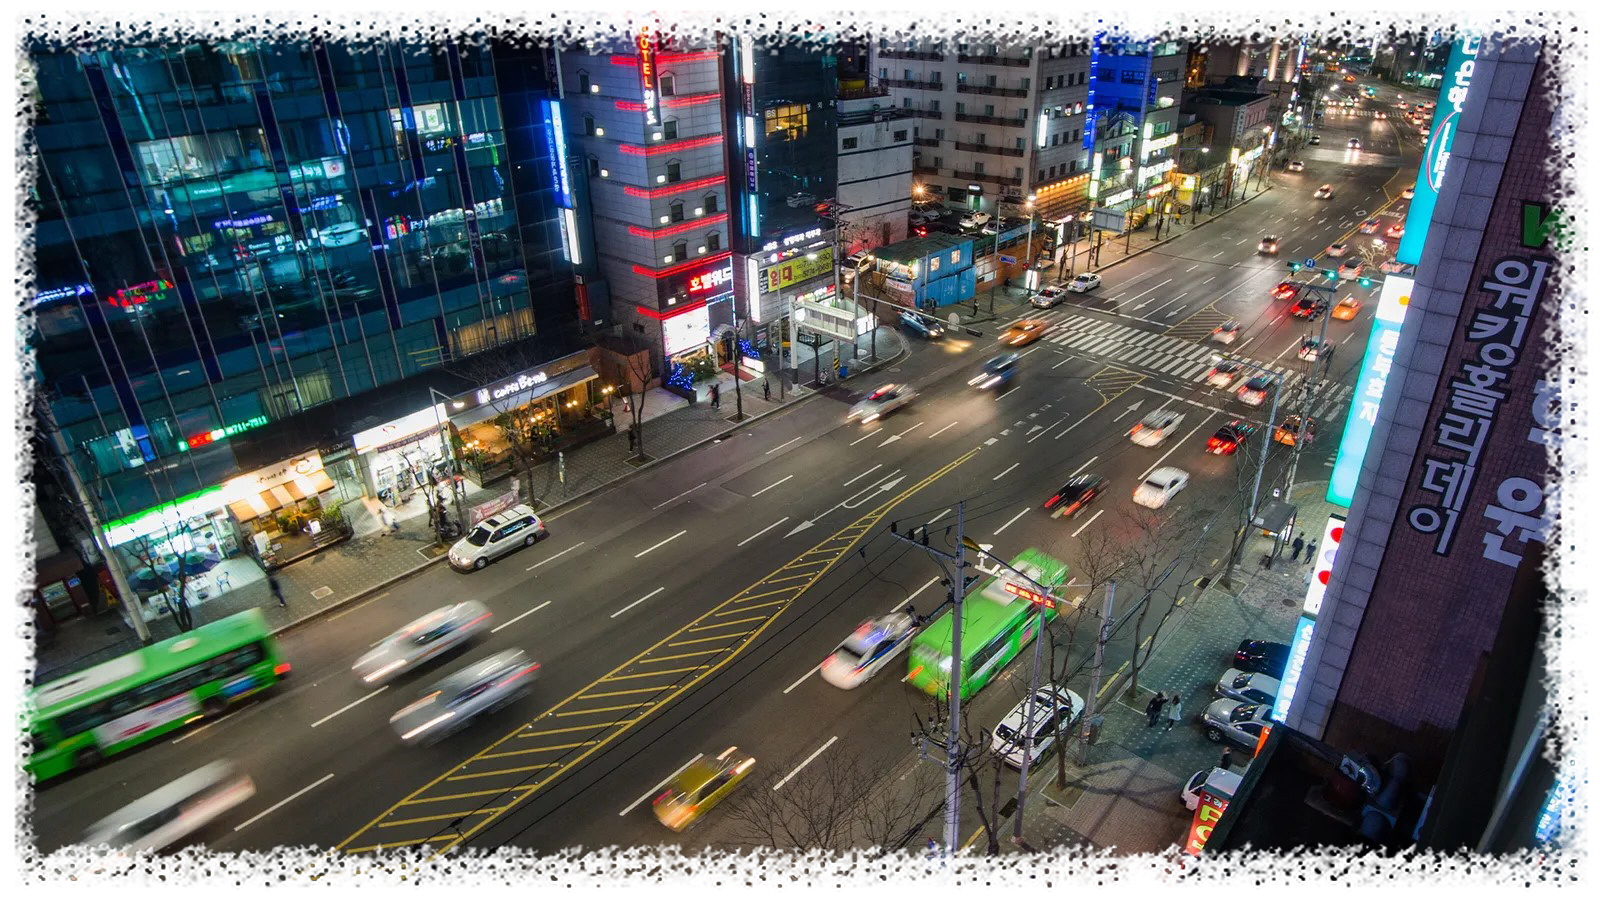 신천은 서울 최고의 밤문화 지역 중 하나이며 도시의 수많은 네온 불빛을 볼 수 있는 최고의 장소입니다